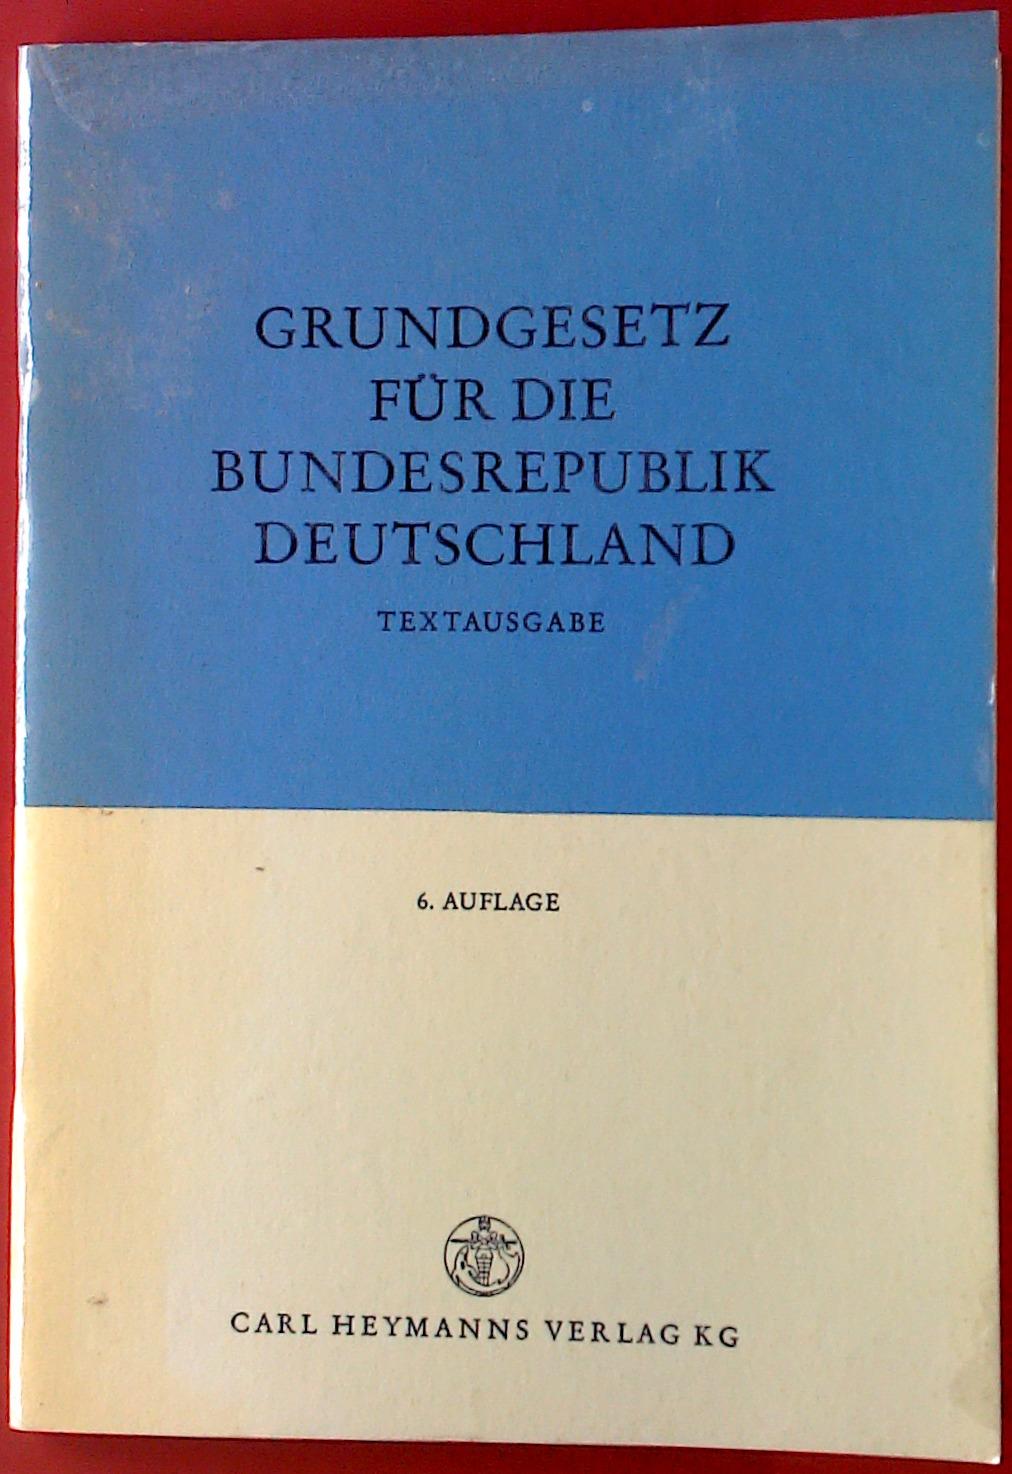 Grundgesetz für die Bundesrepublik Deutschland. Textausgabe. 6. Auflage. - ohne Autorenangabe